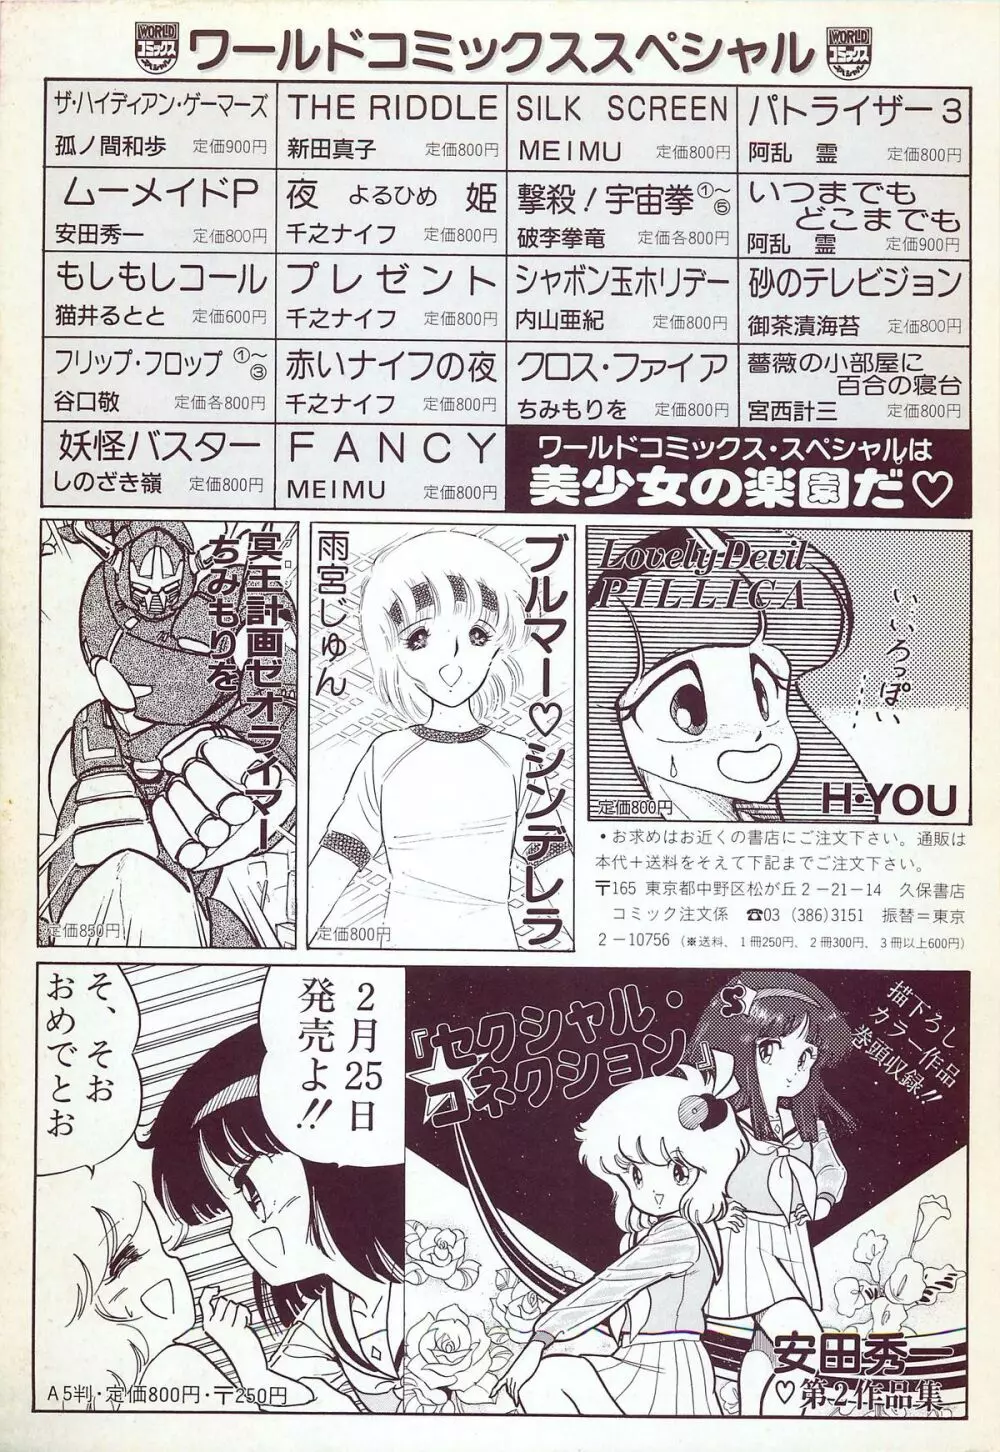 レモンピープル 1987年3月増刊号 Vol.70 オールカラー 115ページ